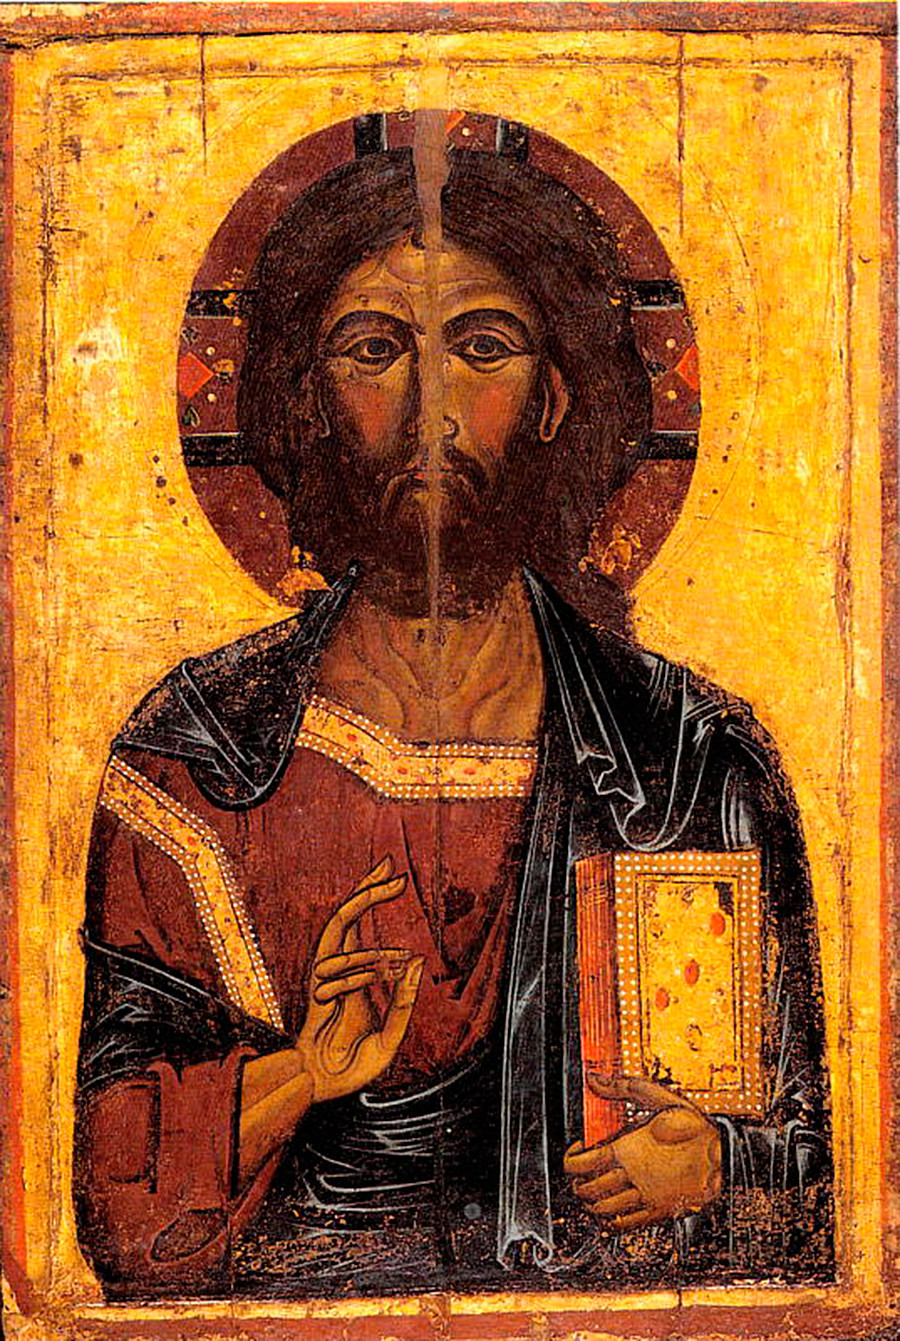 Das älteste Objekt des Museums: eine Ikone des Christus Pantokrators aus dem 13. Jahrhundert aus Gawschinka (einem Dorf in der Nähe der Stadt Jaroslawl).
